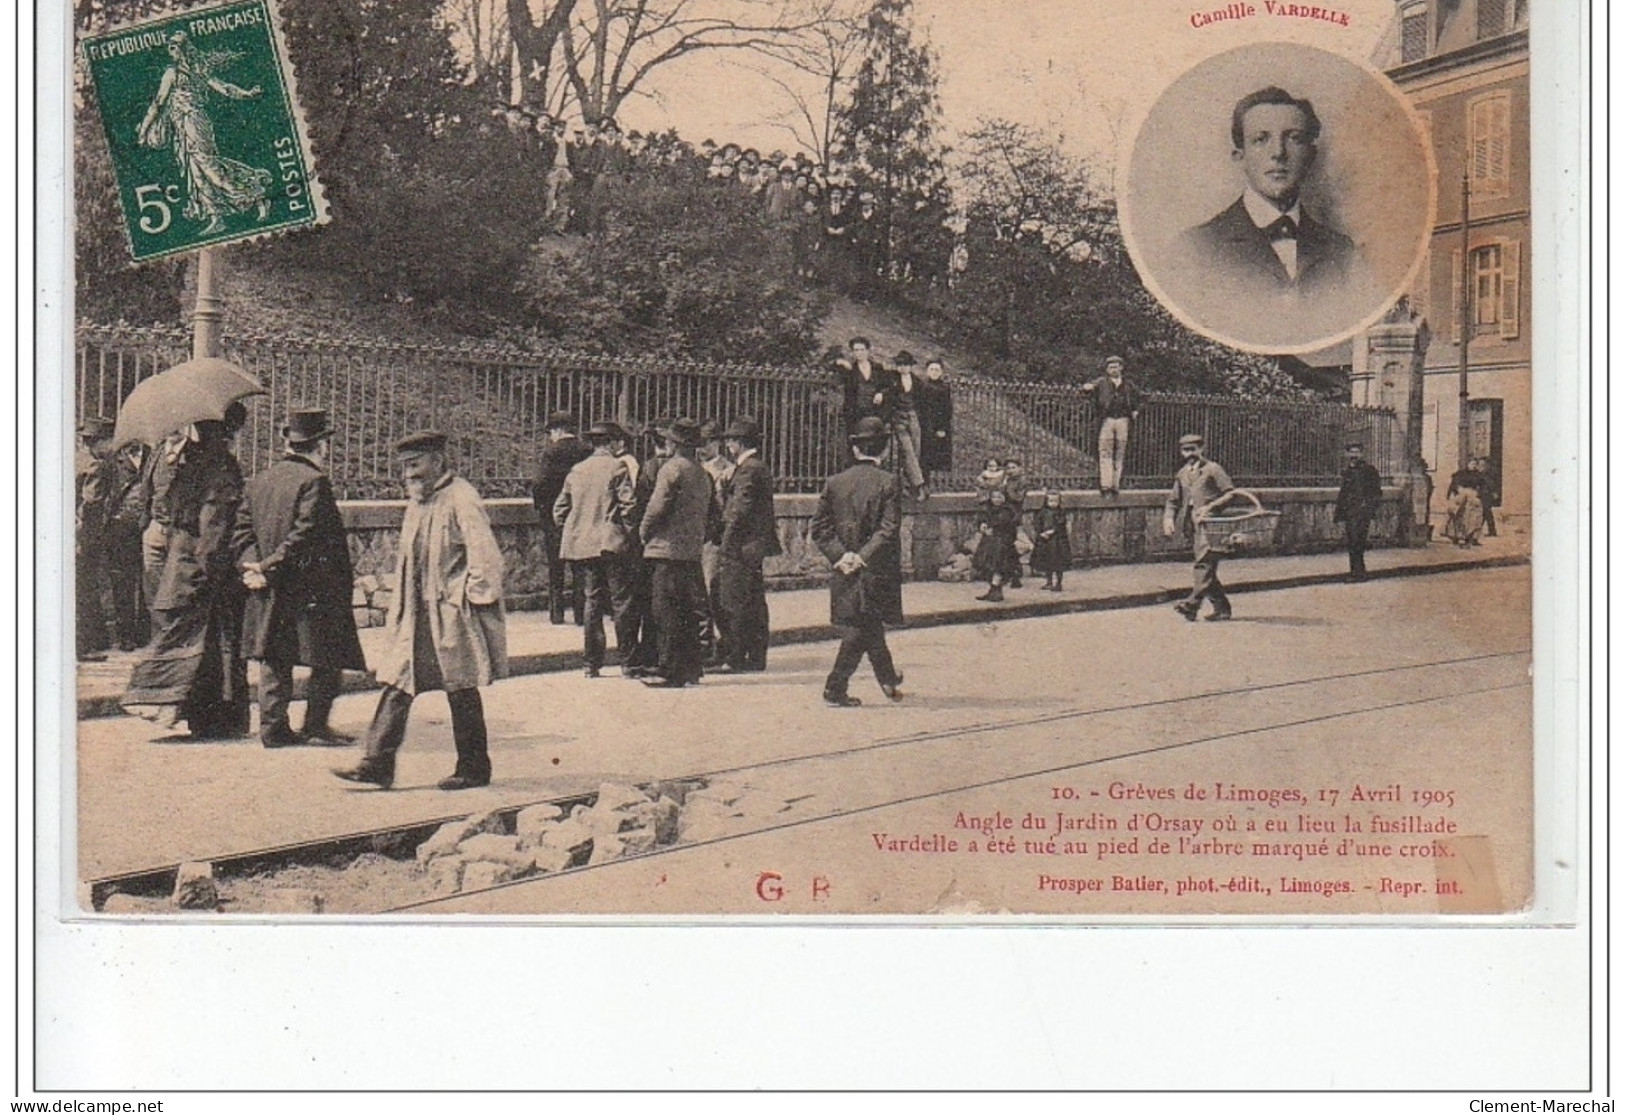 LIMOGES - Grèves De Limoges Avril 1905 - Angle Du Jardin D'Orsay Où à Eu Lieu La Fusillade - état - Limoges